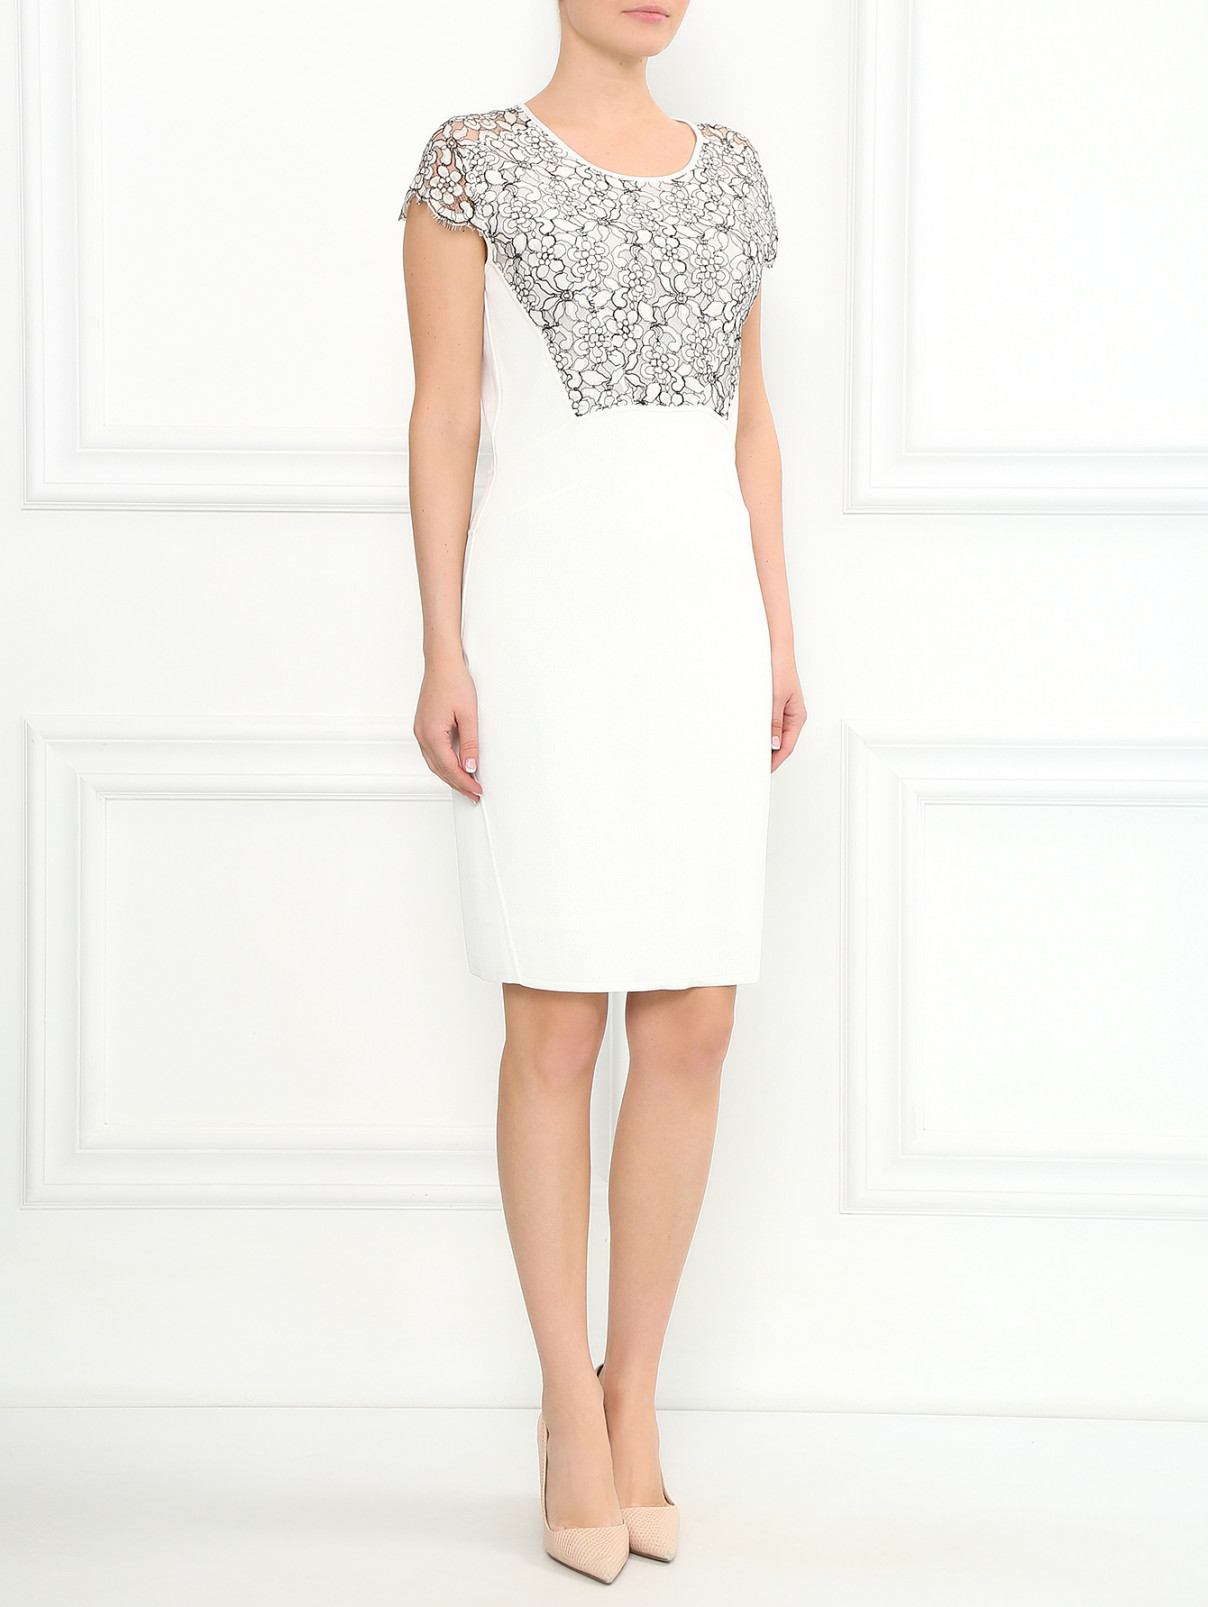 Трикотажное платье-футляр с вставкой из кружева Lil pour l'Autre  –  Модель Общий вид  – Цвет:  Белый